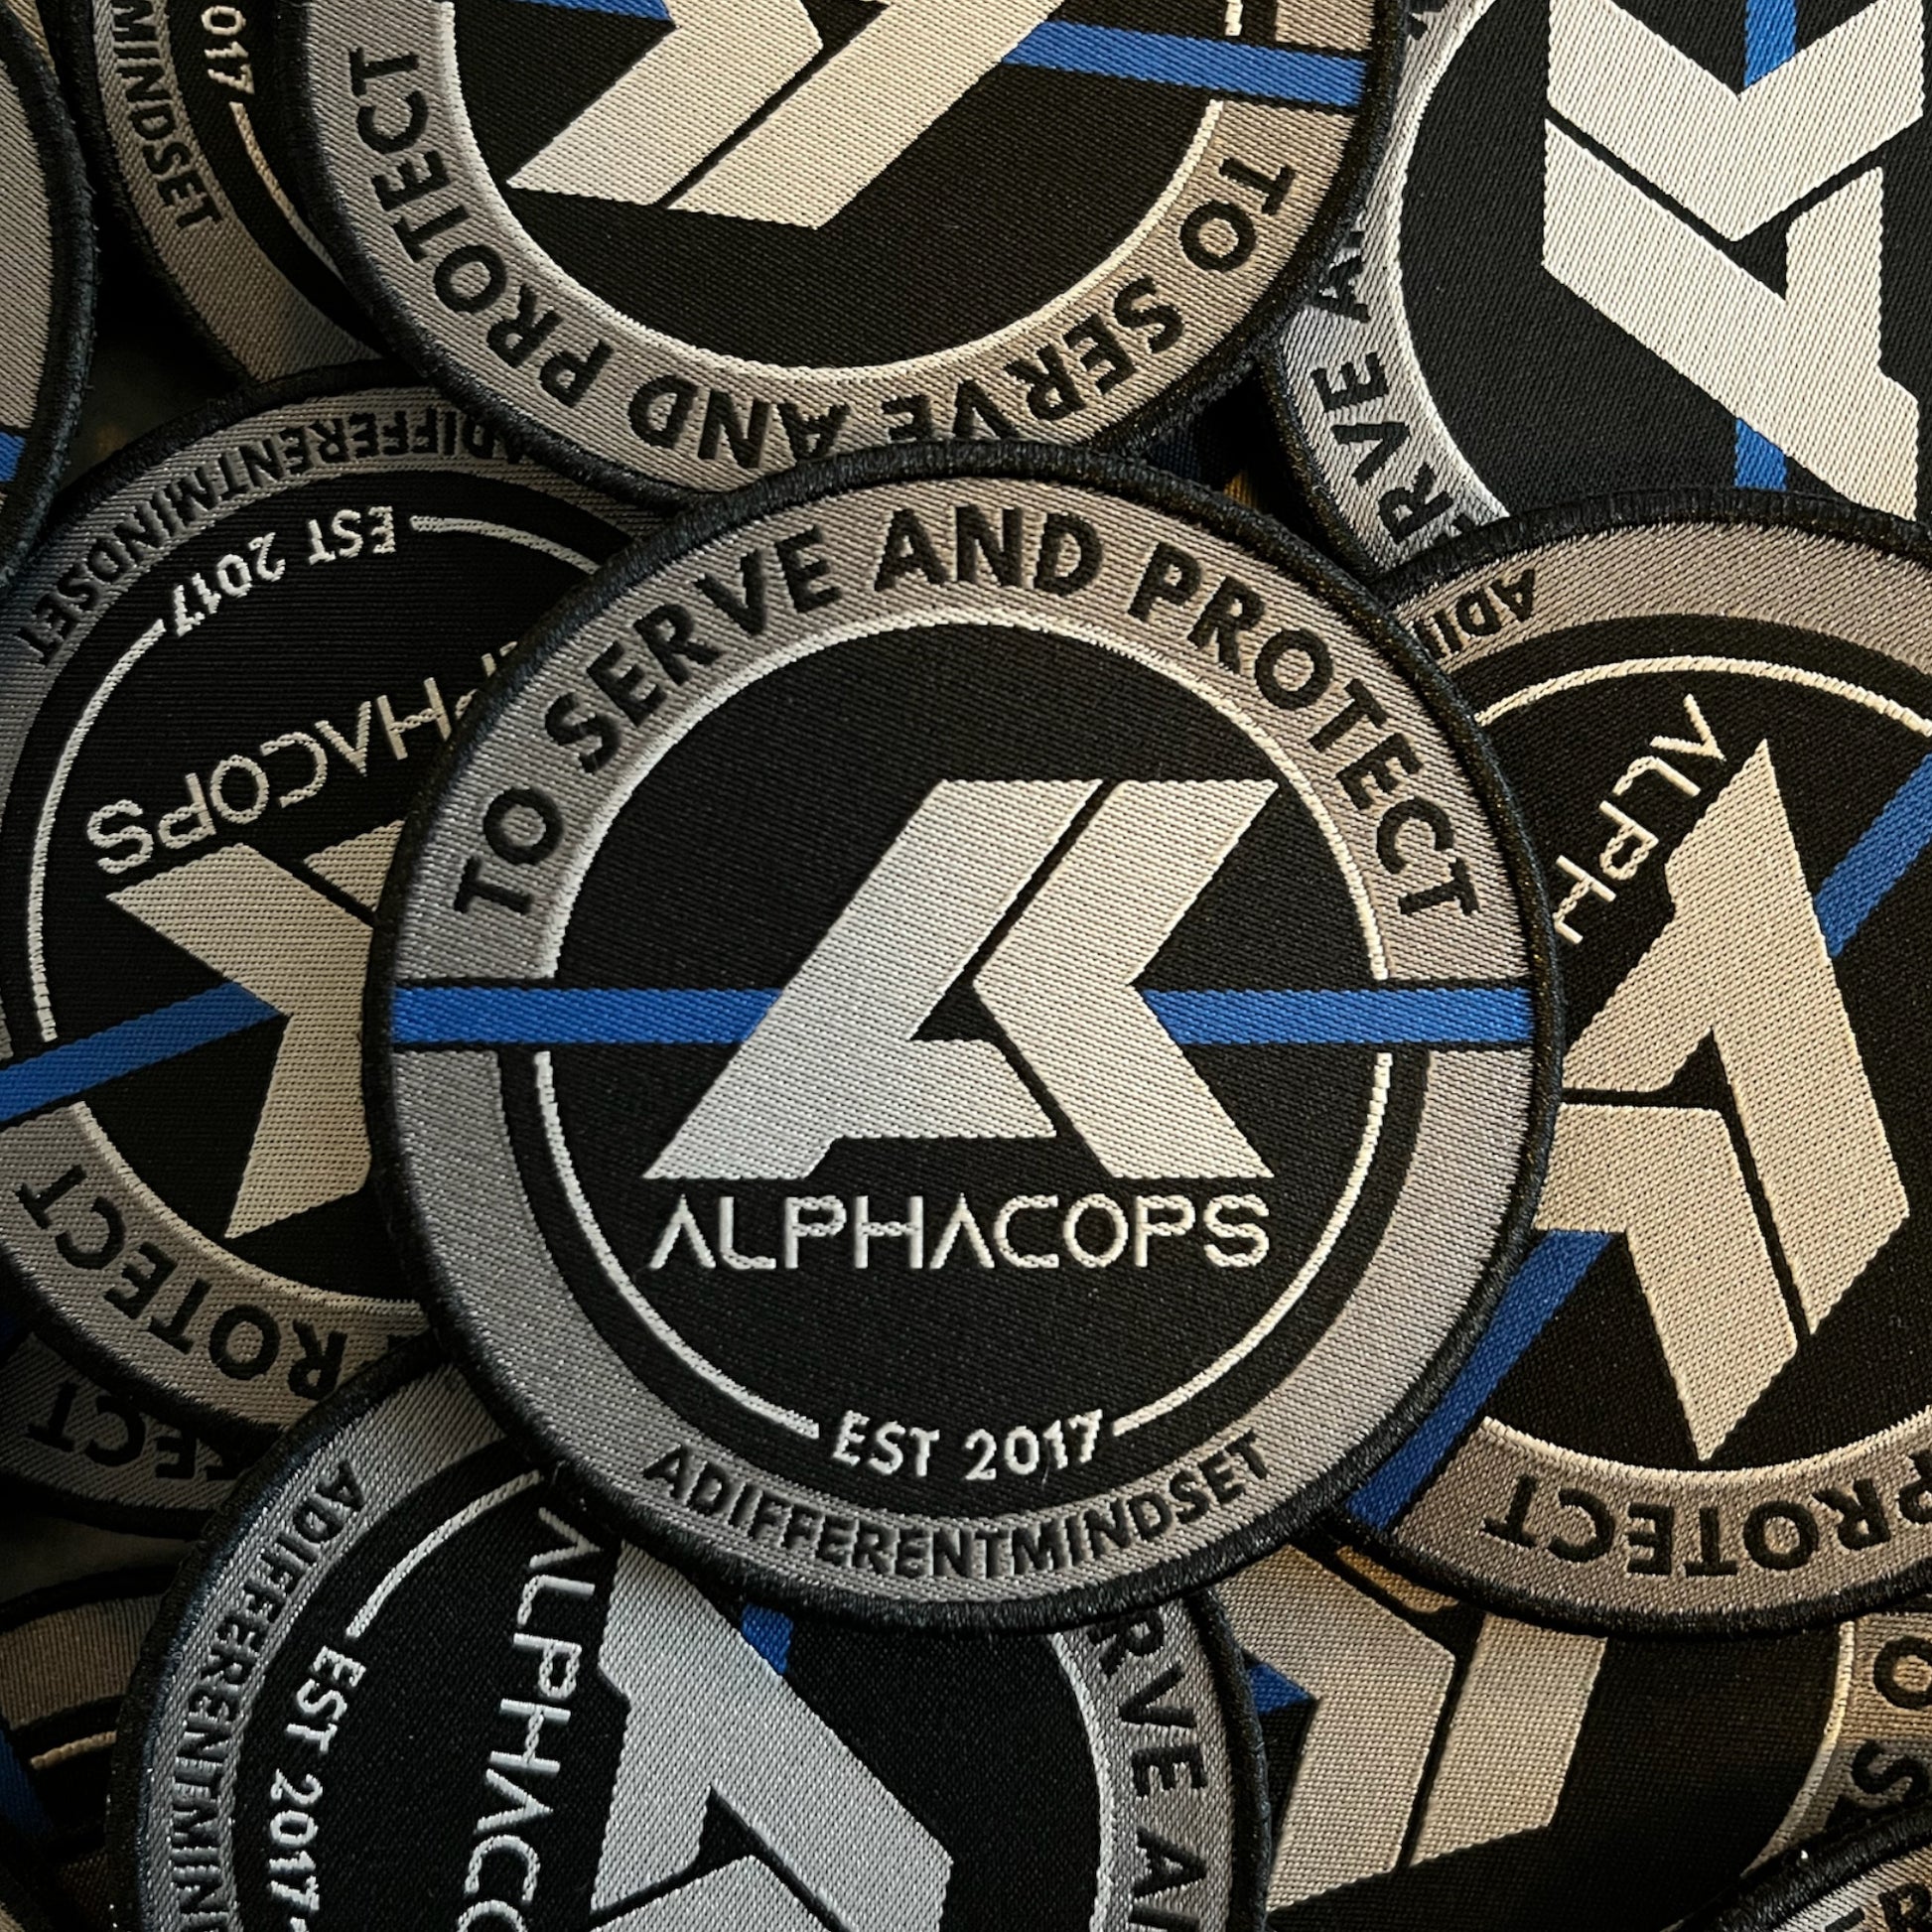 ALPHACOPS PATCH - Alphacops